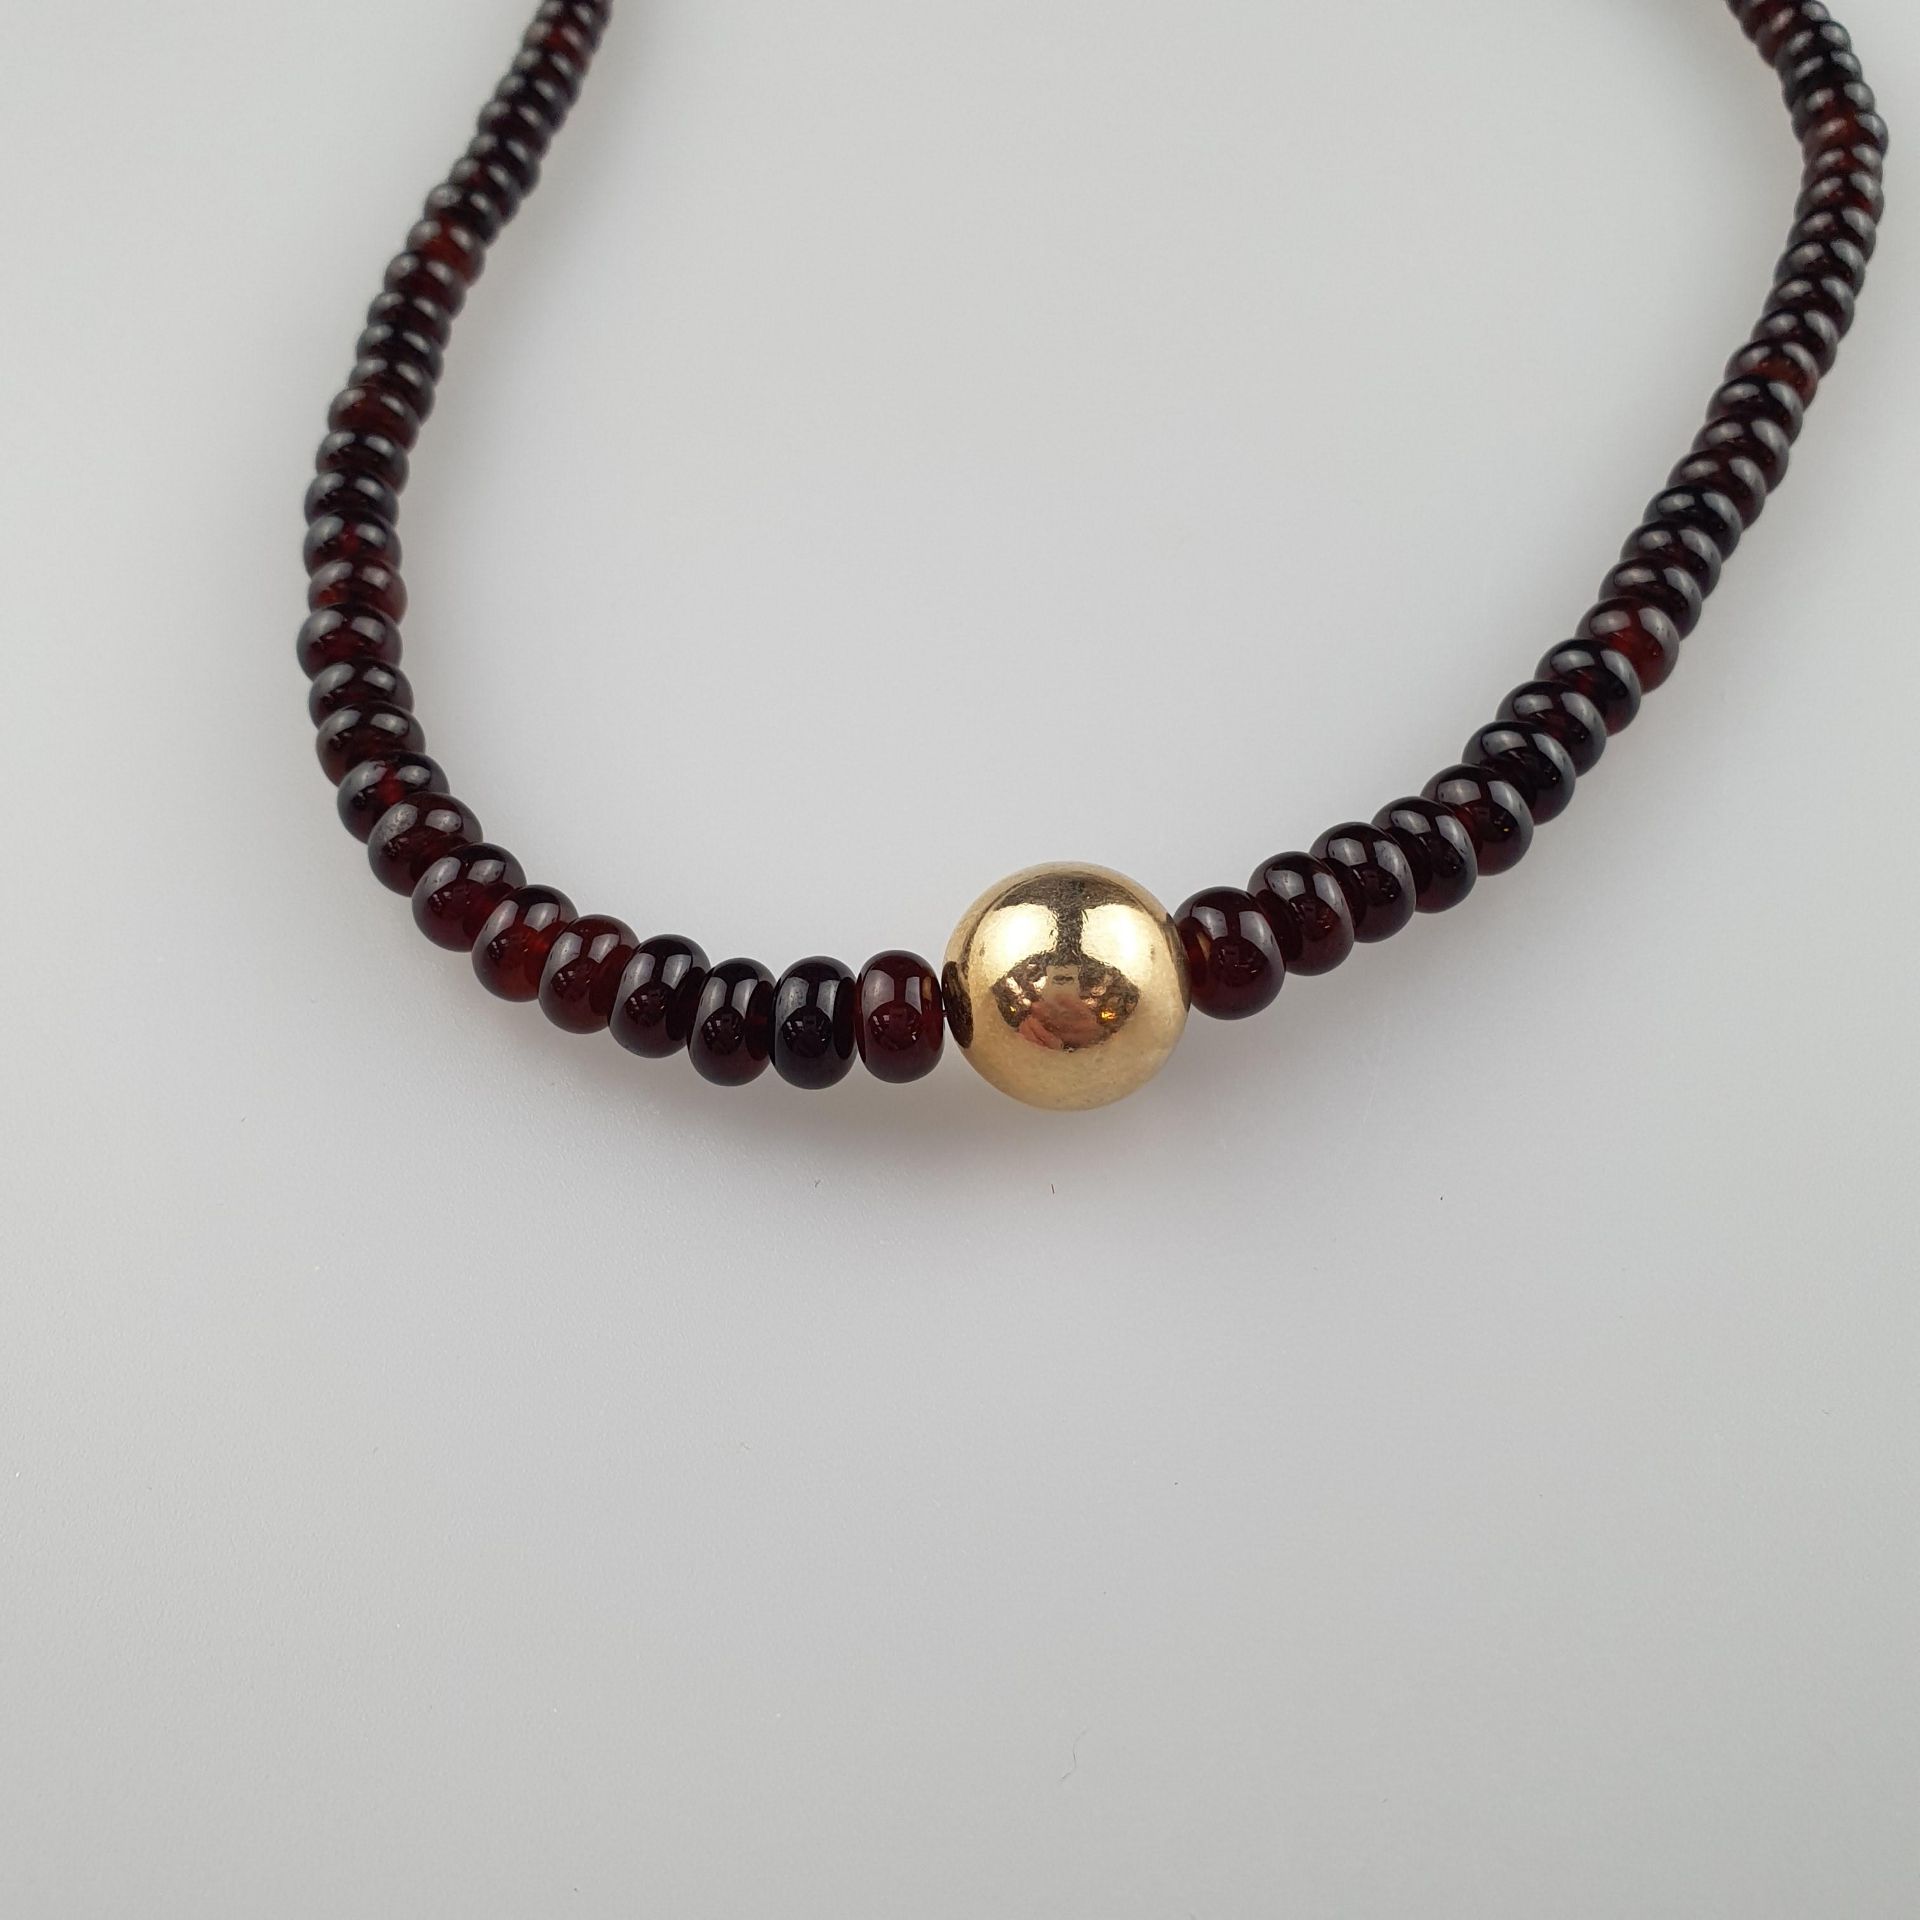 Granat-Halskette - Granatsteine im Verlauf, zusammen | 217cts Garnet necklace with rose gold ball i - Image 2 of 4